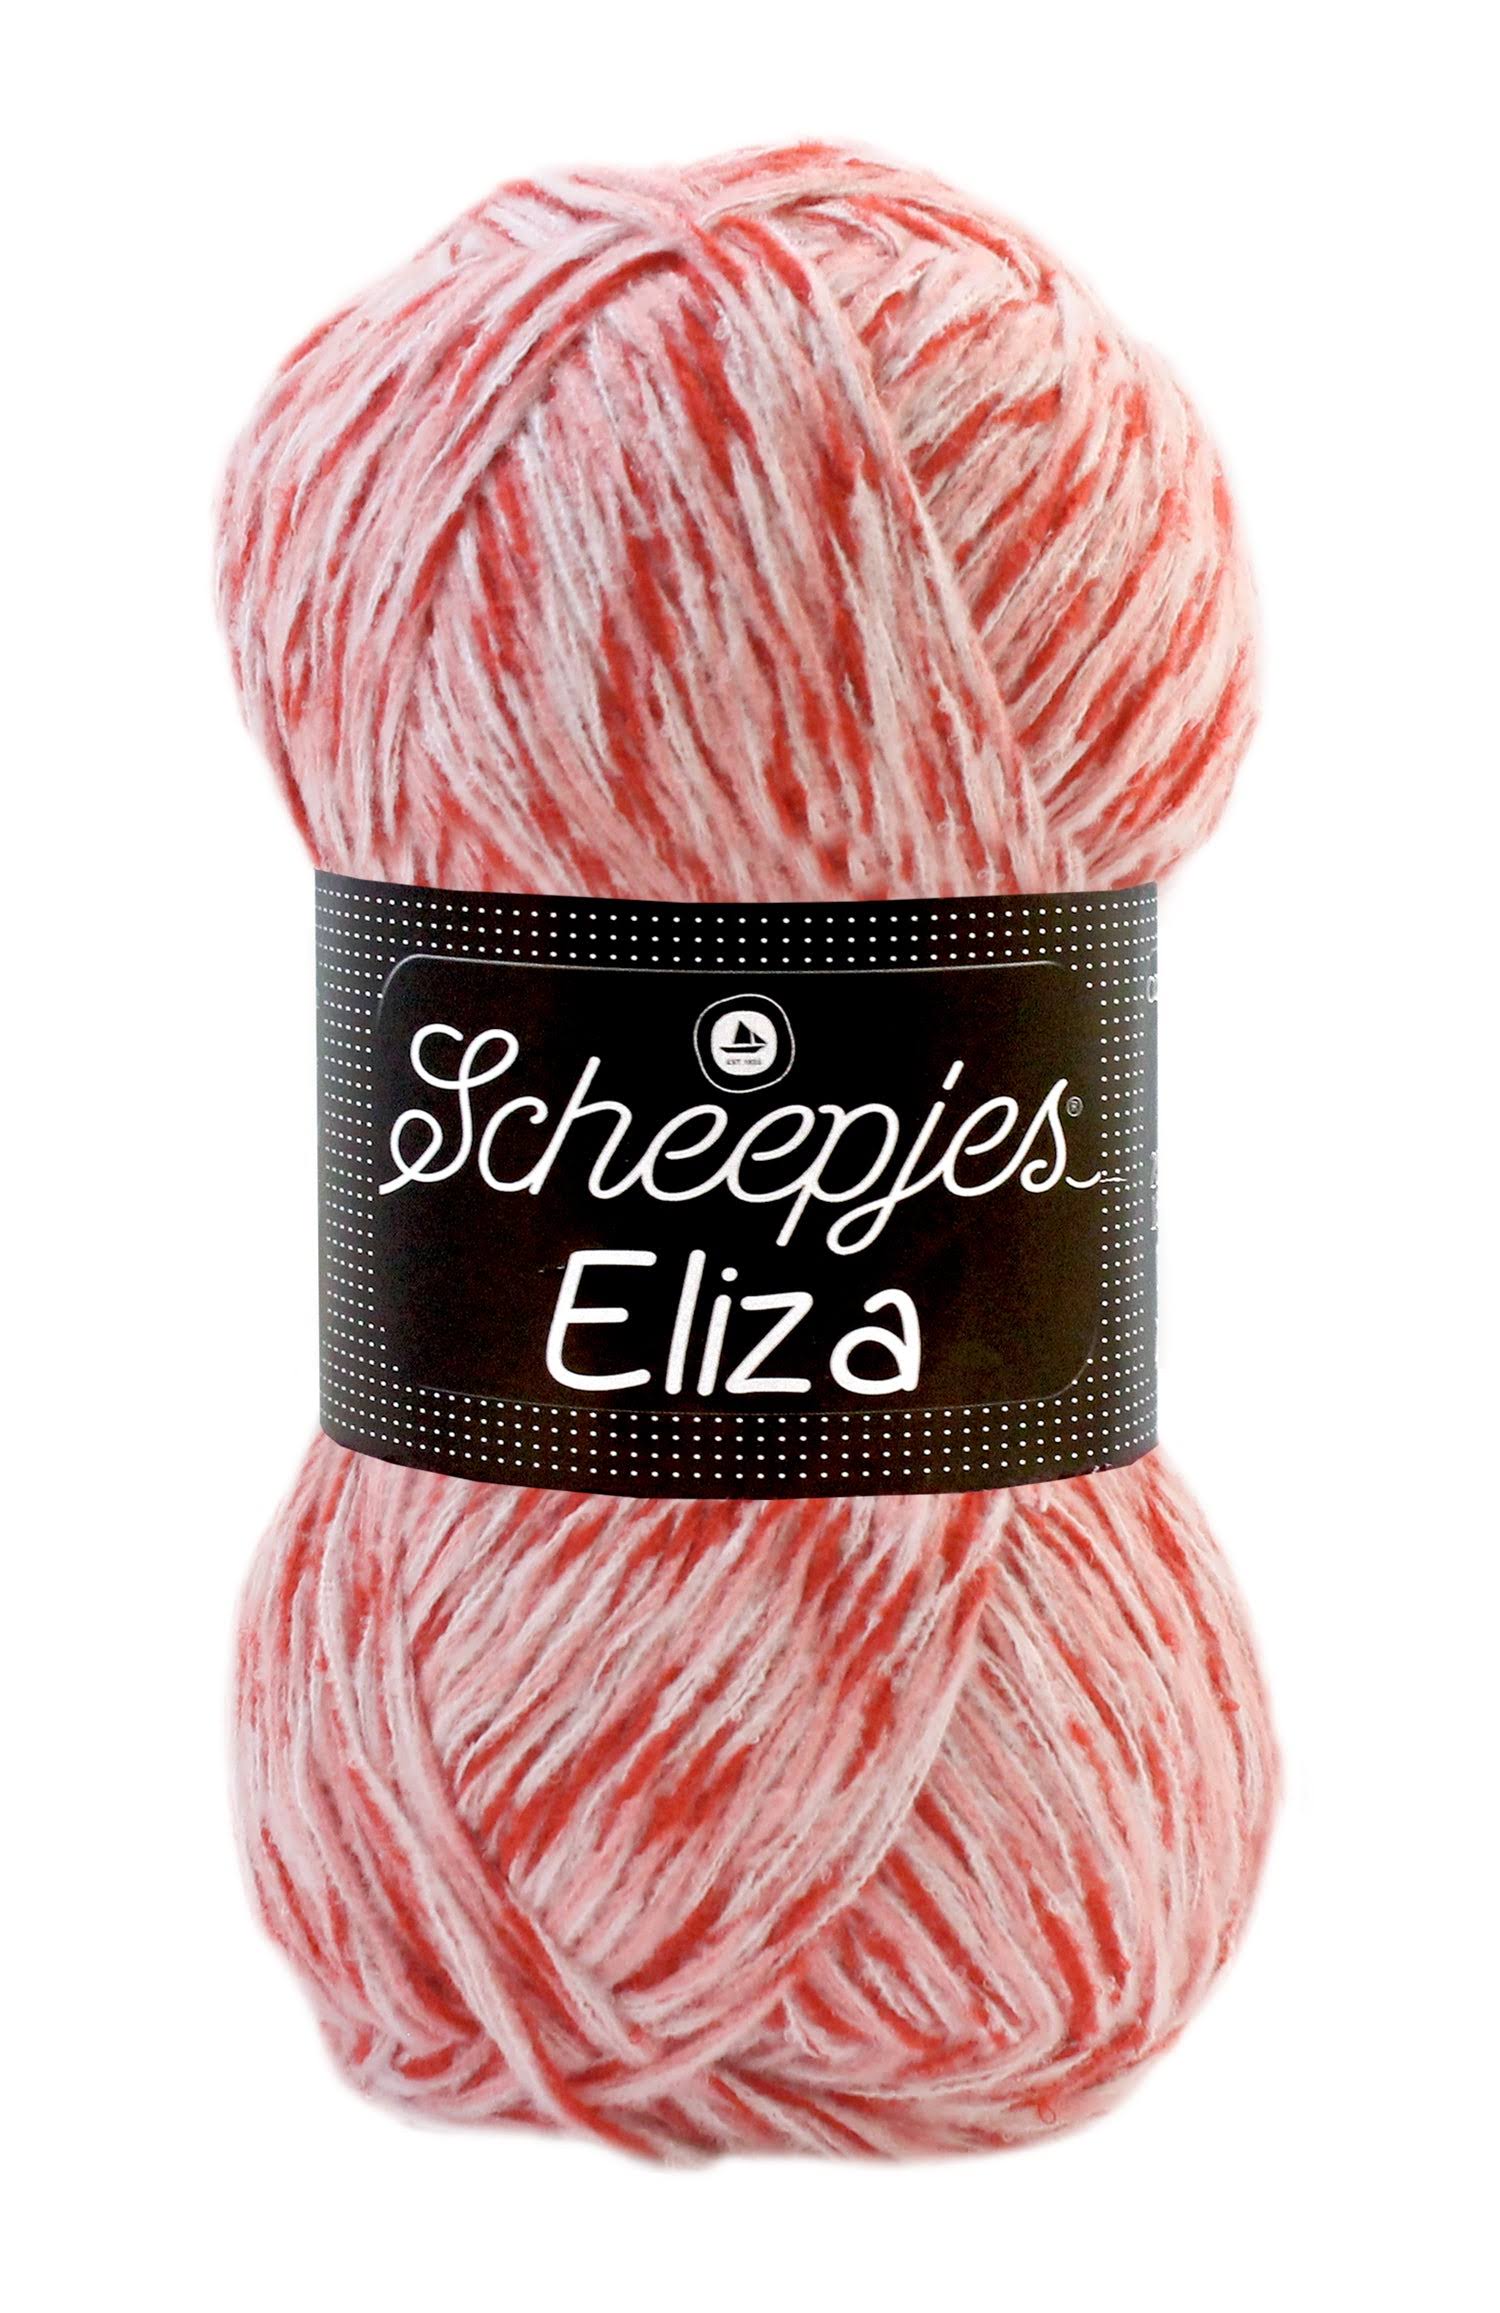 Scheepjes Eliza DK Weight Red/Pink Yarn 100g - 206 Candy Store